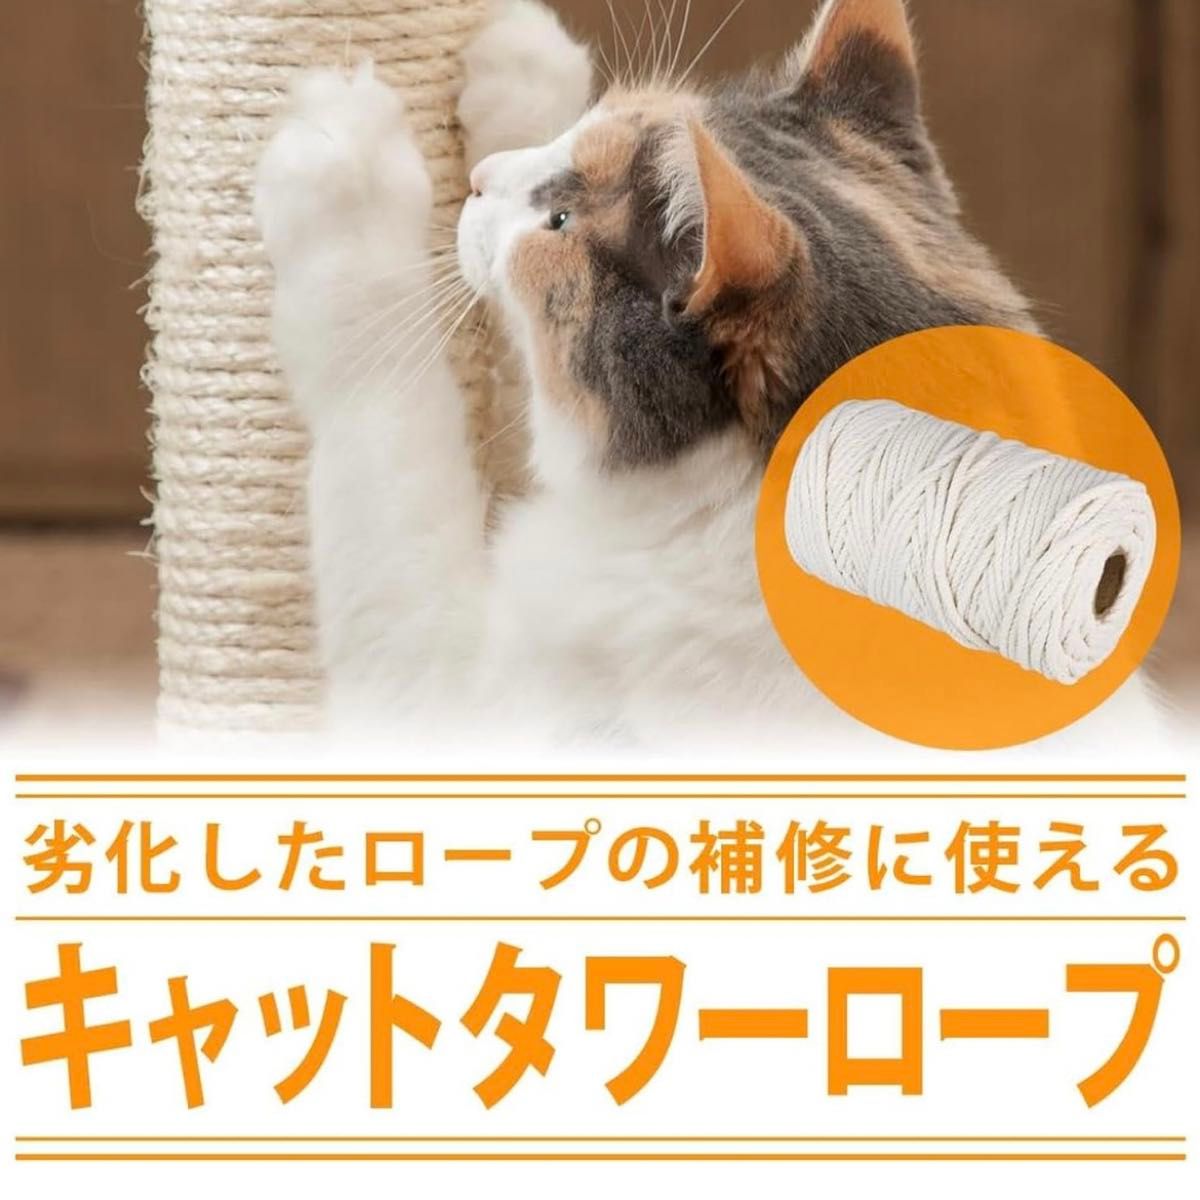 キャットタワー用ロープ 100m 無着色  爪磨き DIY  猫 キャットタワー 爪とぎ